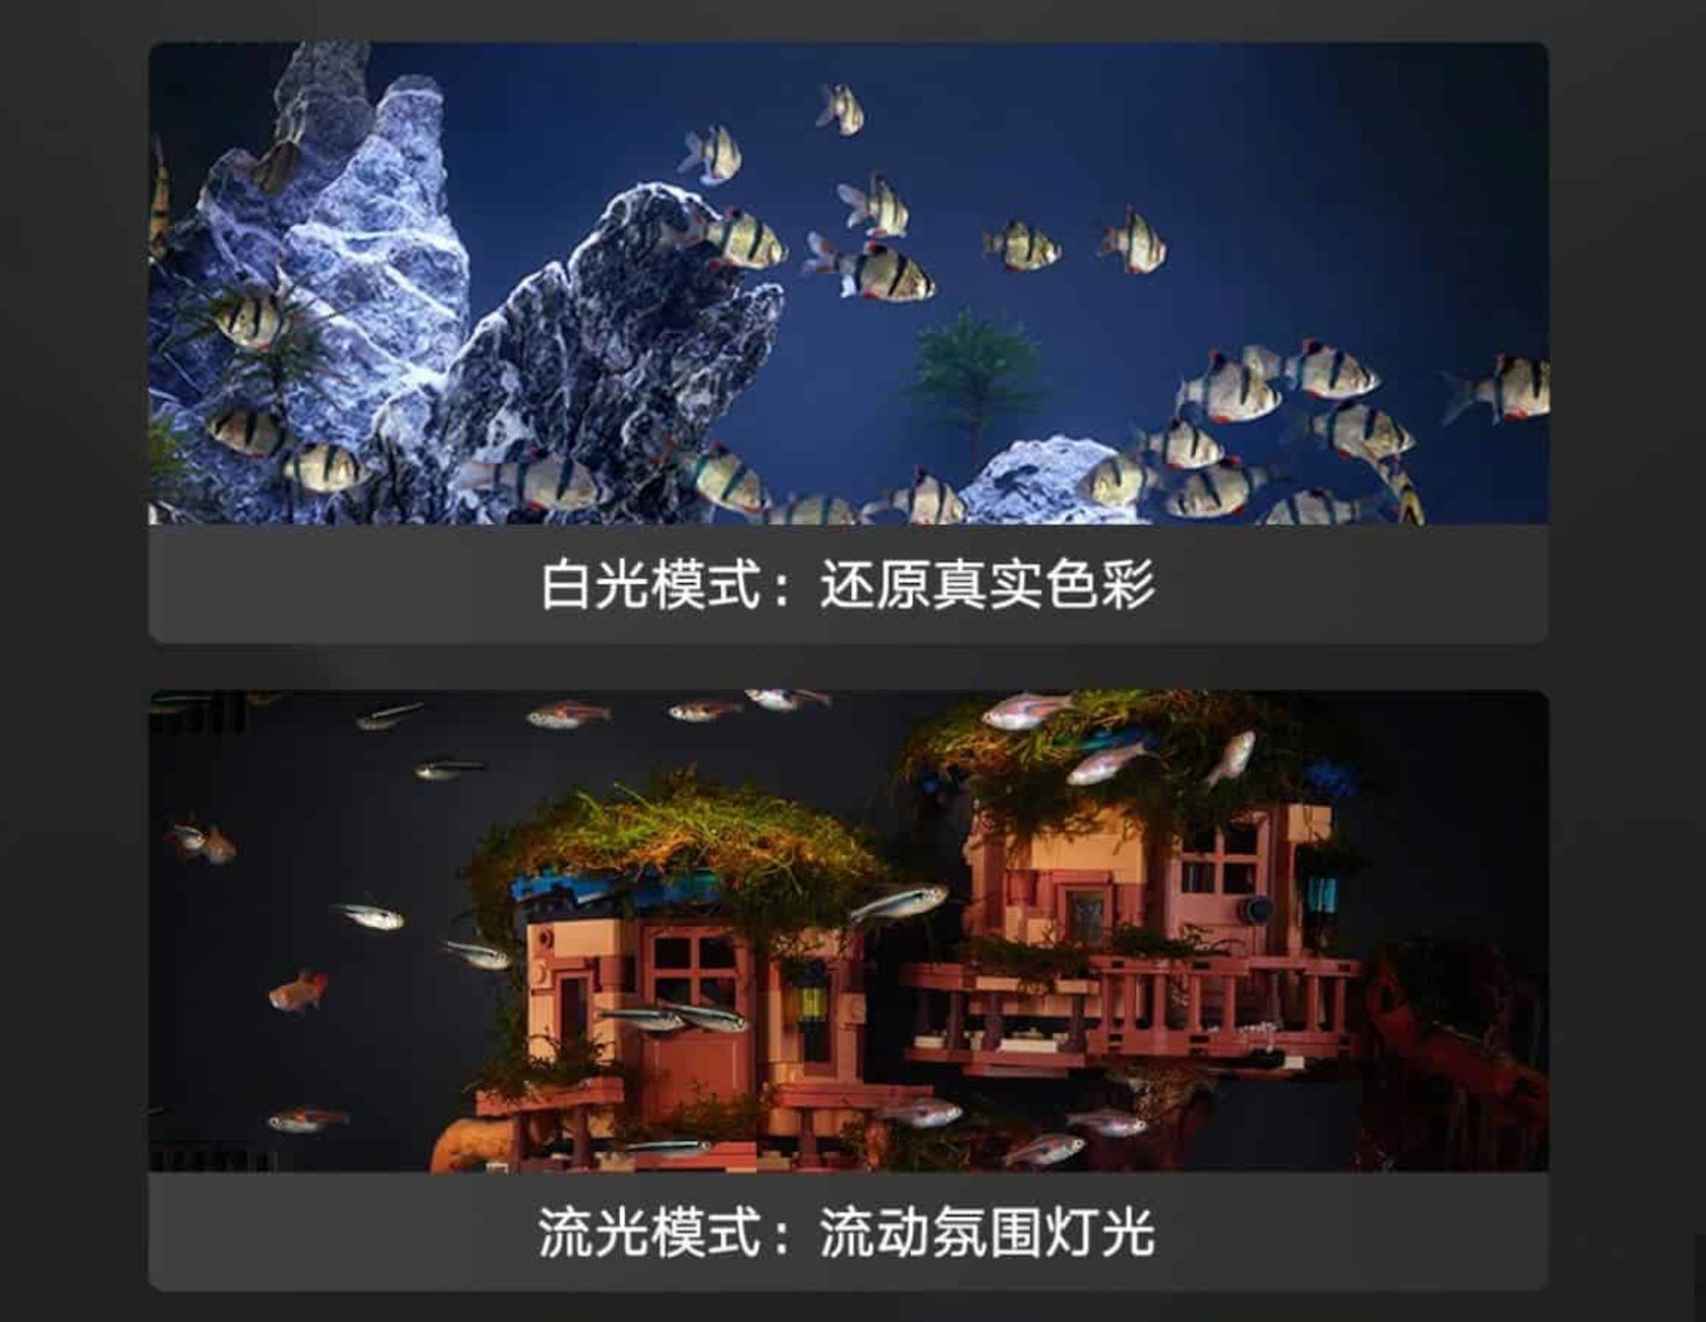 La iluminación del acuario de Xiaomi se puede configurar a nuestro gusto